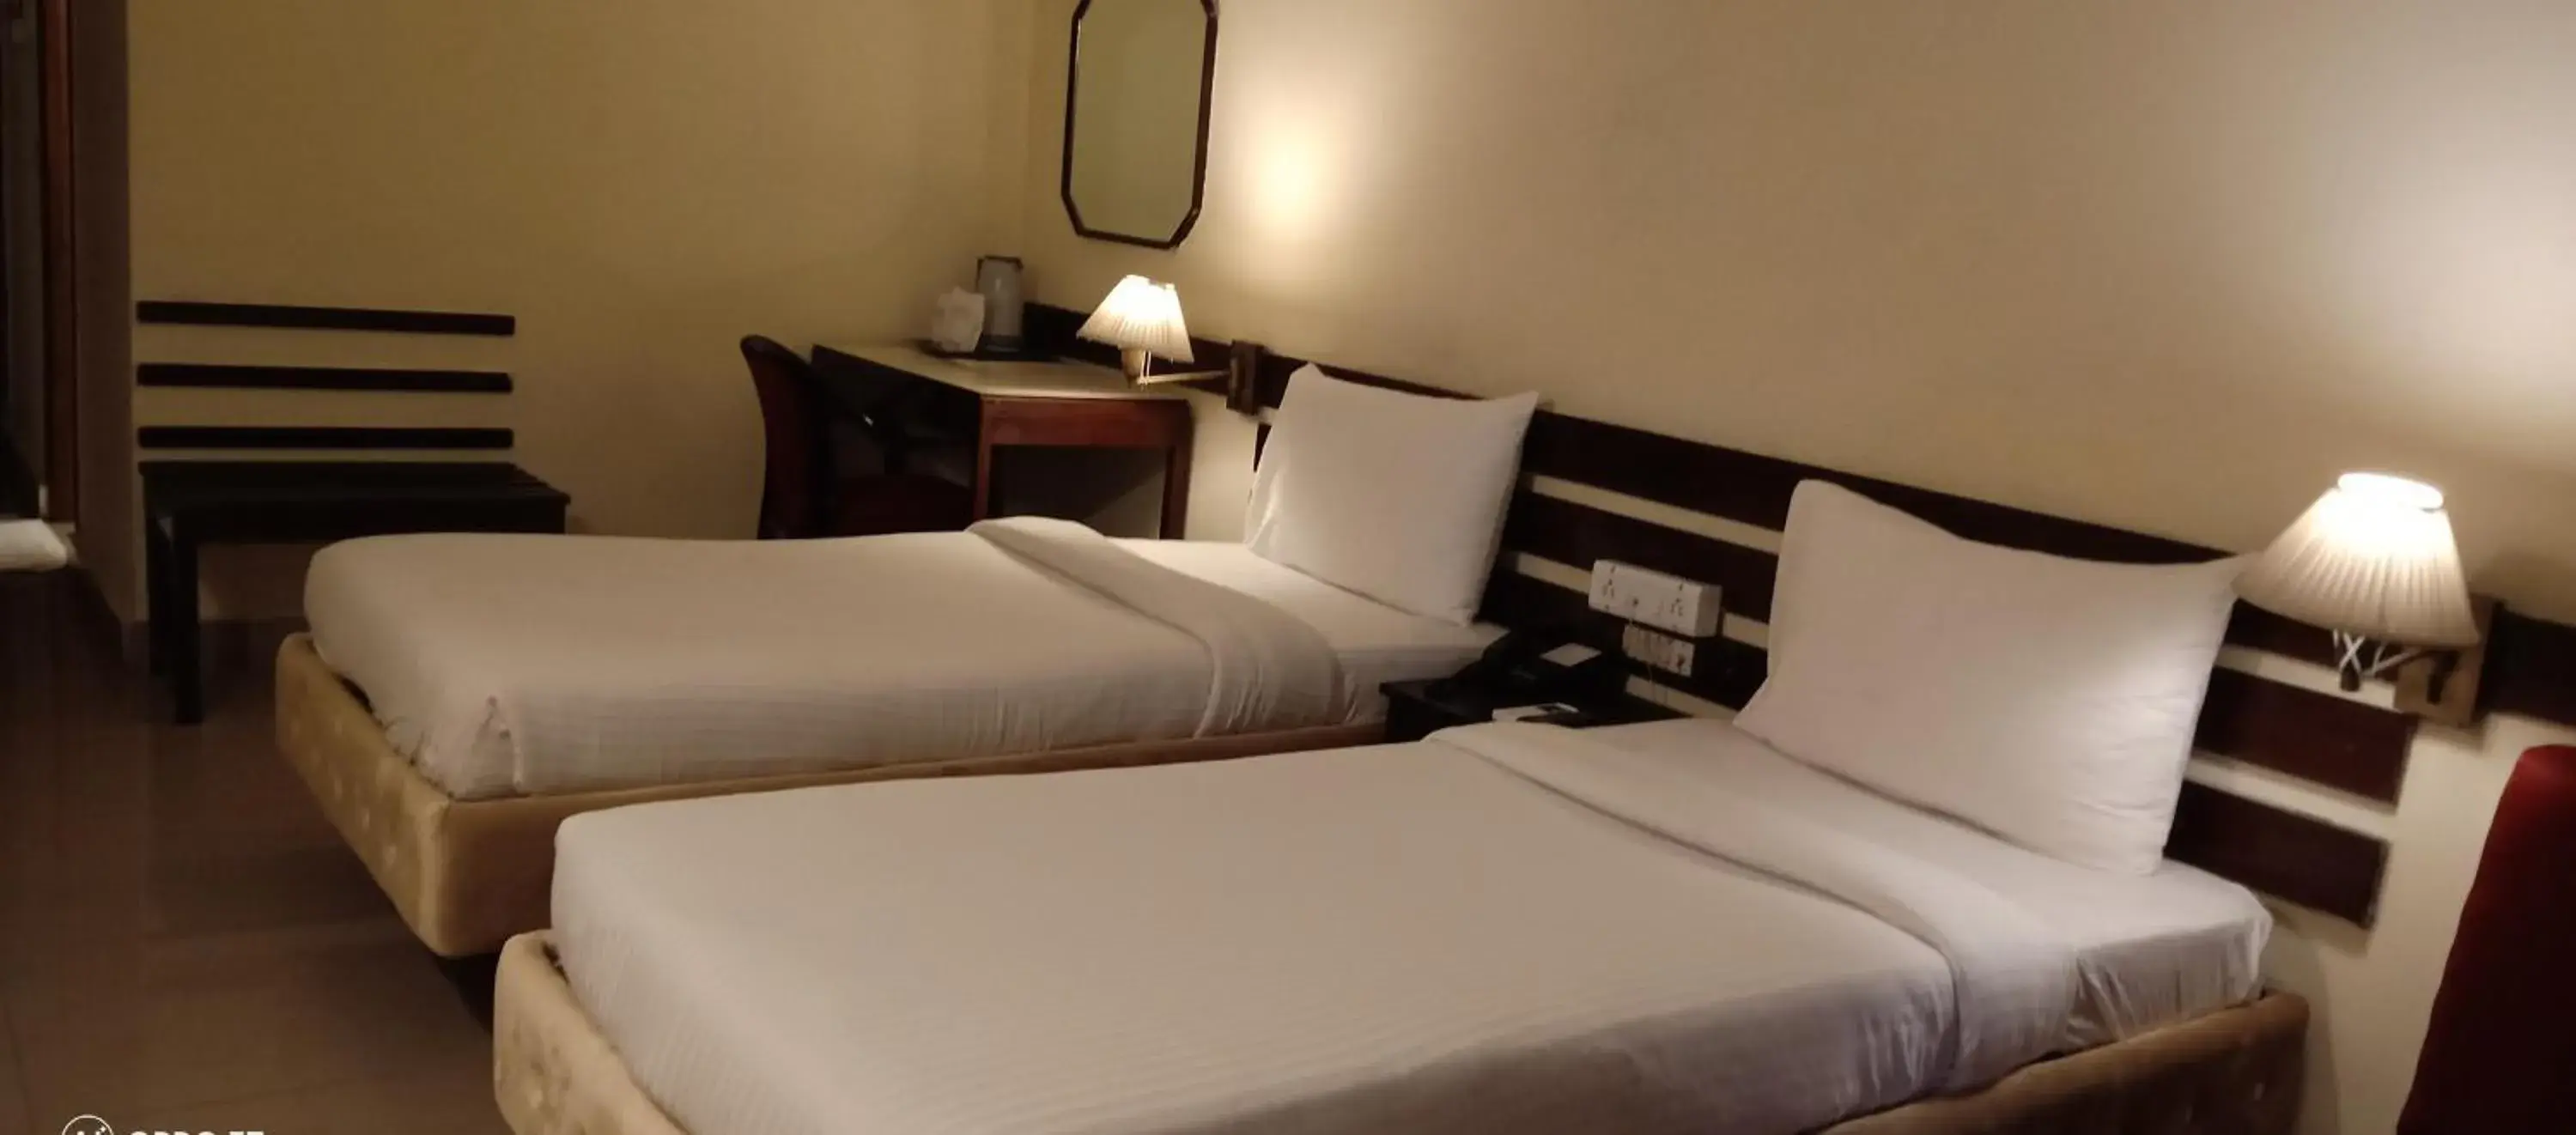 Bed in Hotel Poonja International